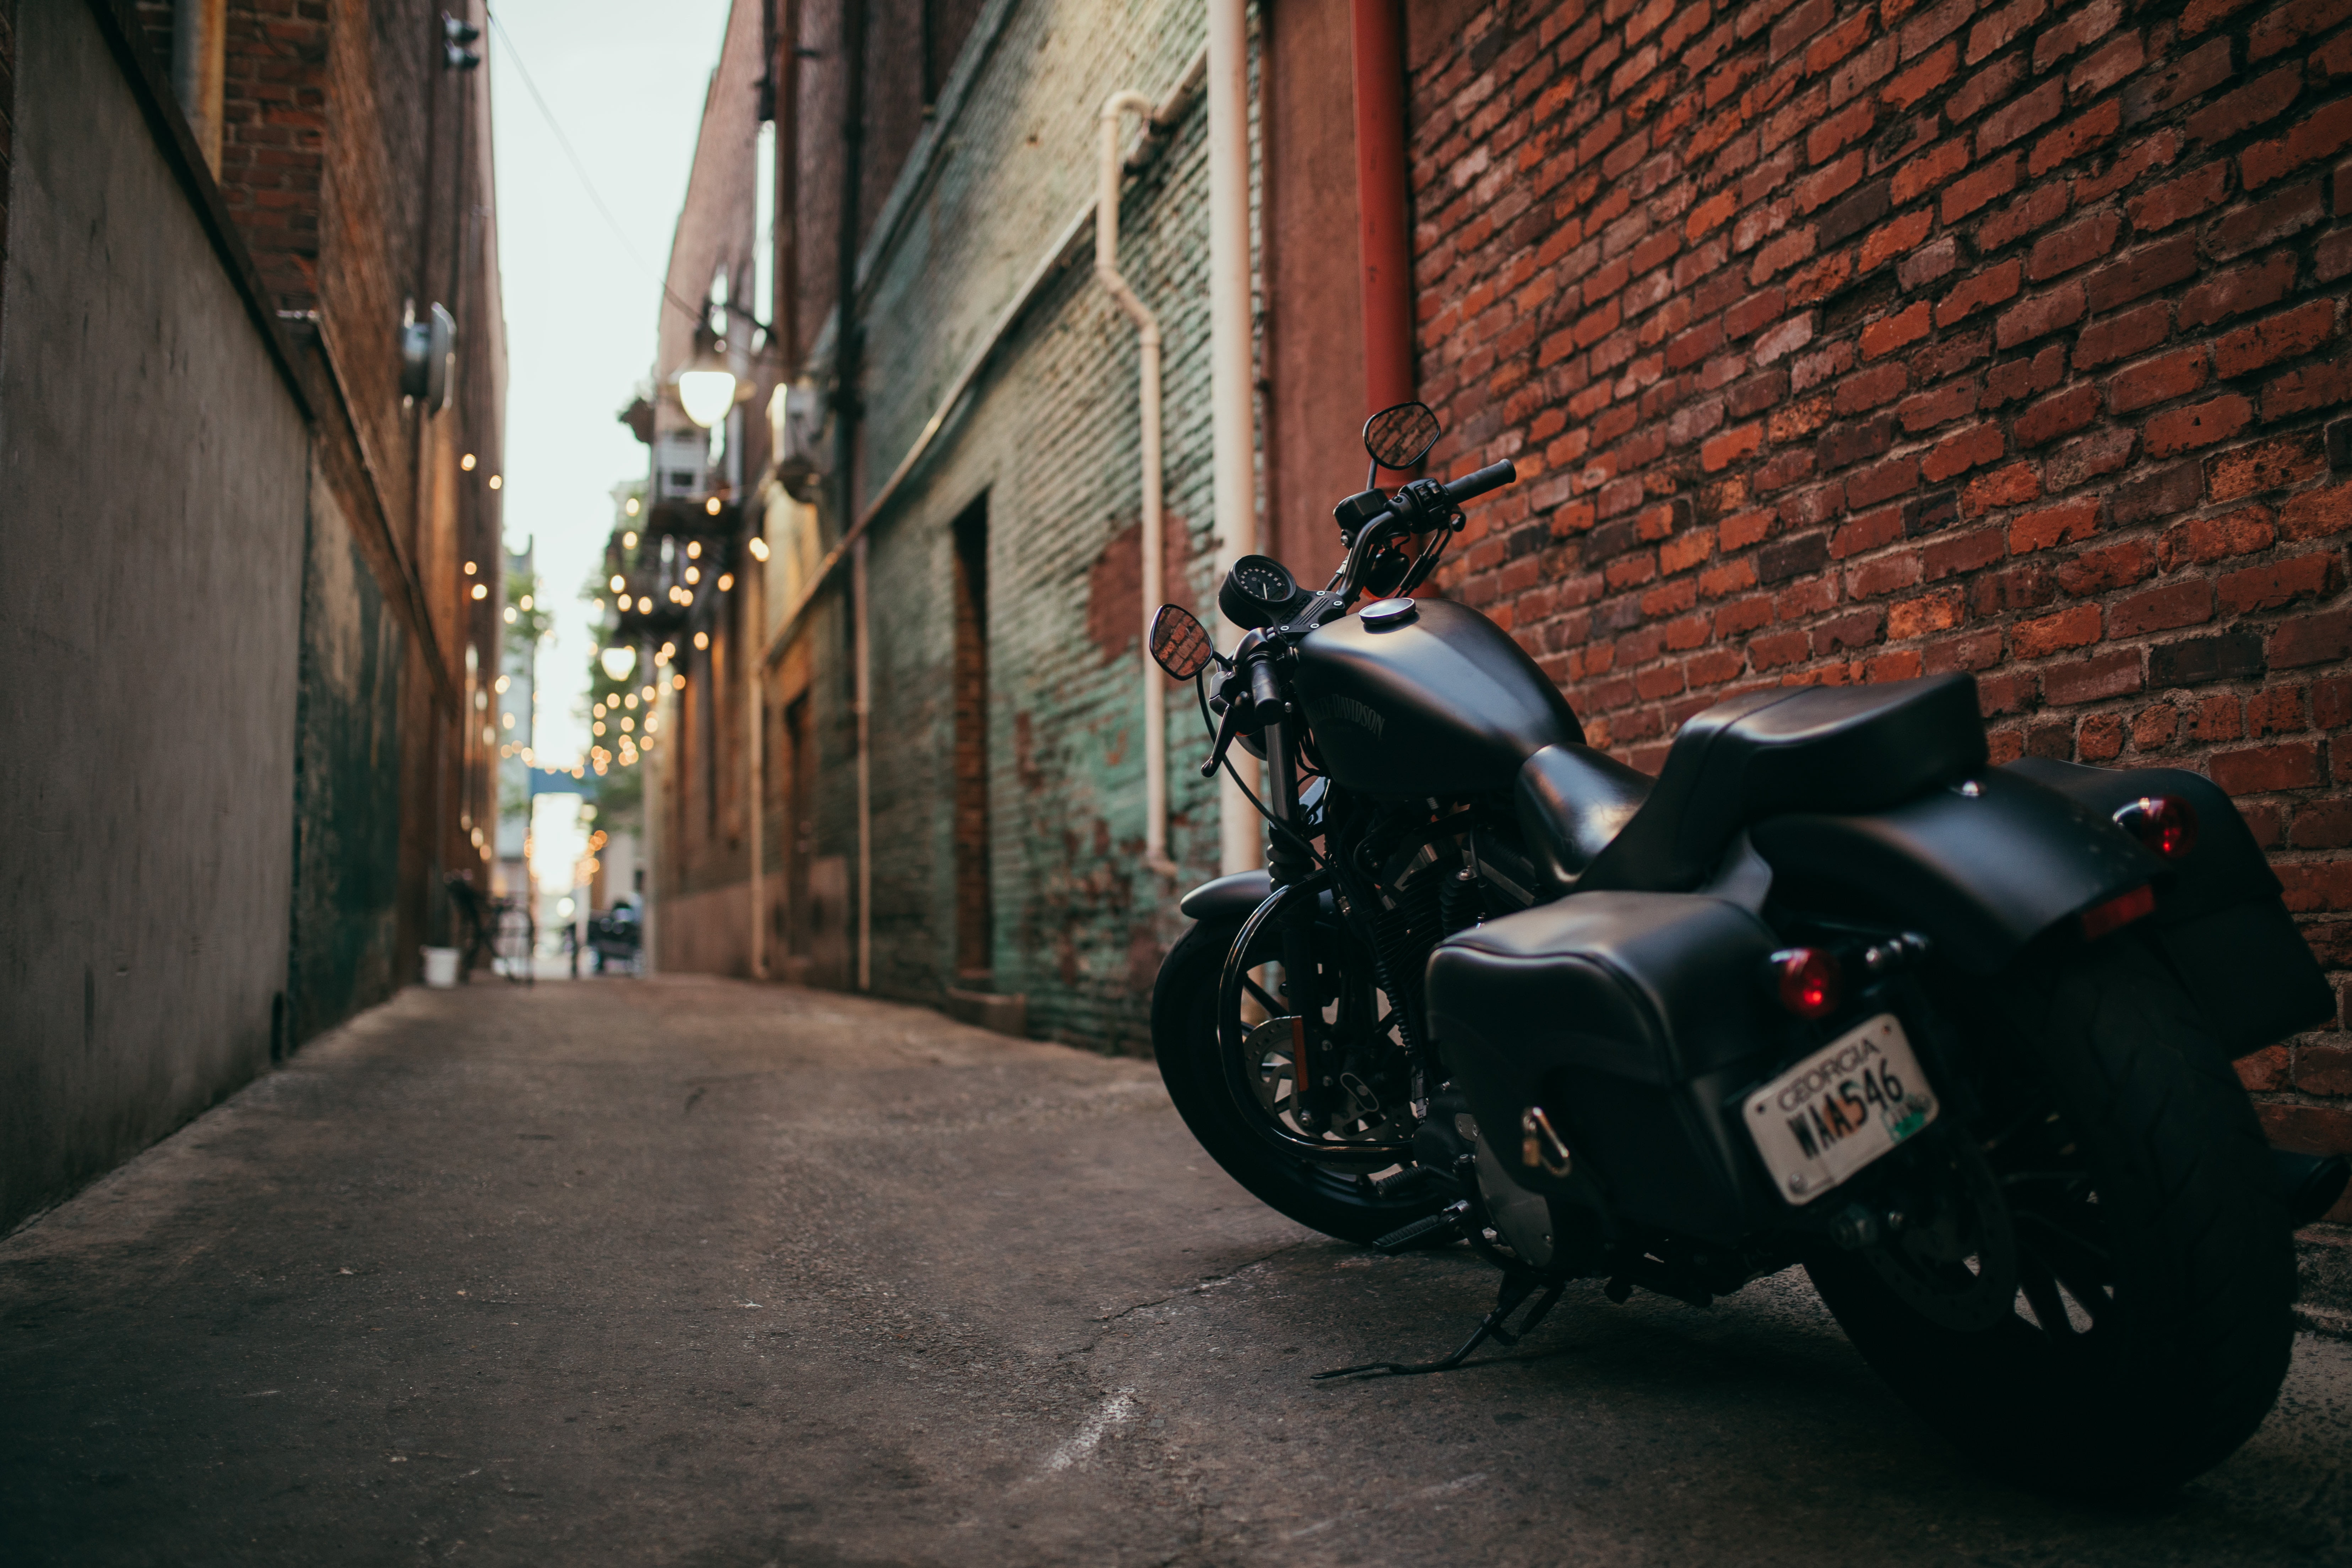 black touring motorcycle, bike, side view, yard, street, urban Scene